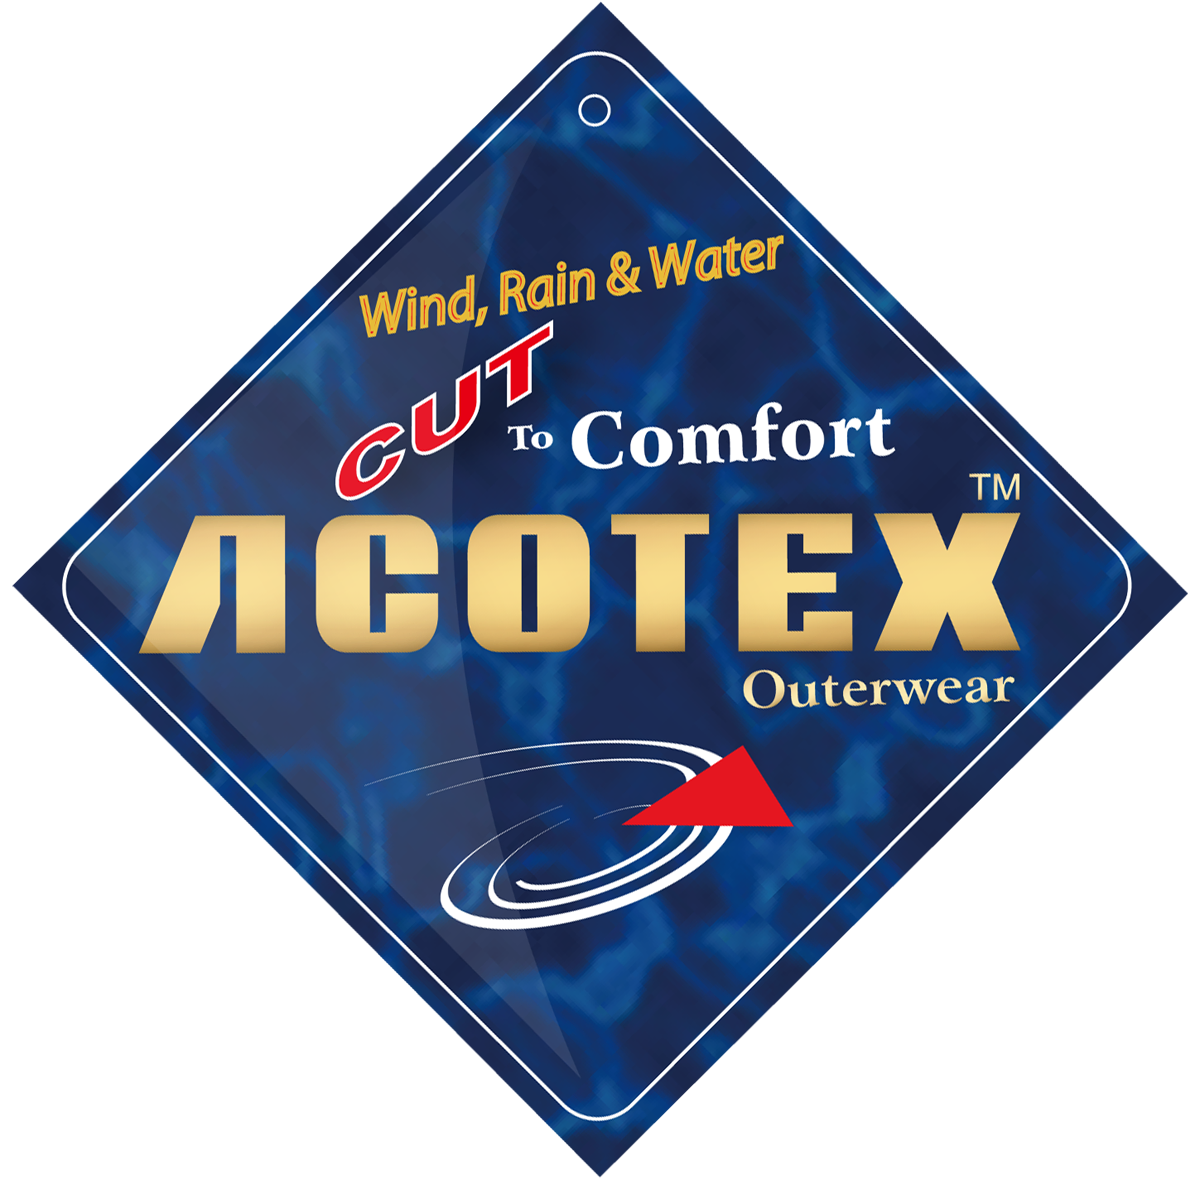 ACOTEX防水防風品質保證吊牌